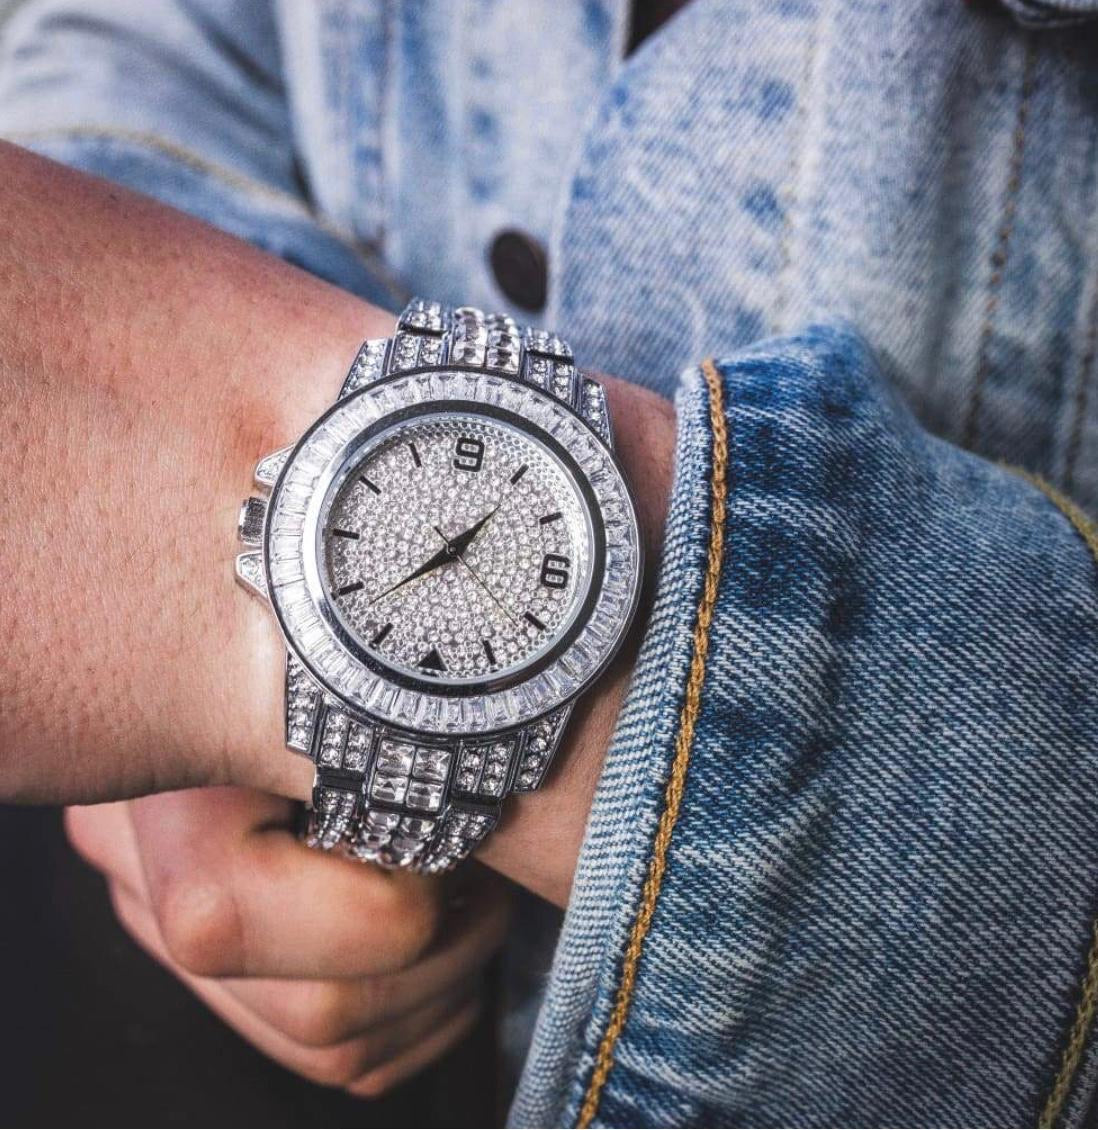 Diamond watch fully Iced